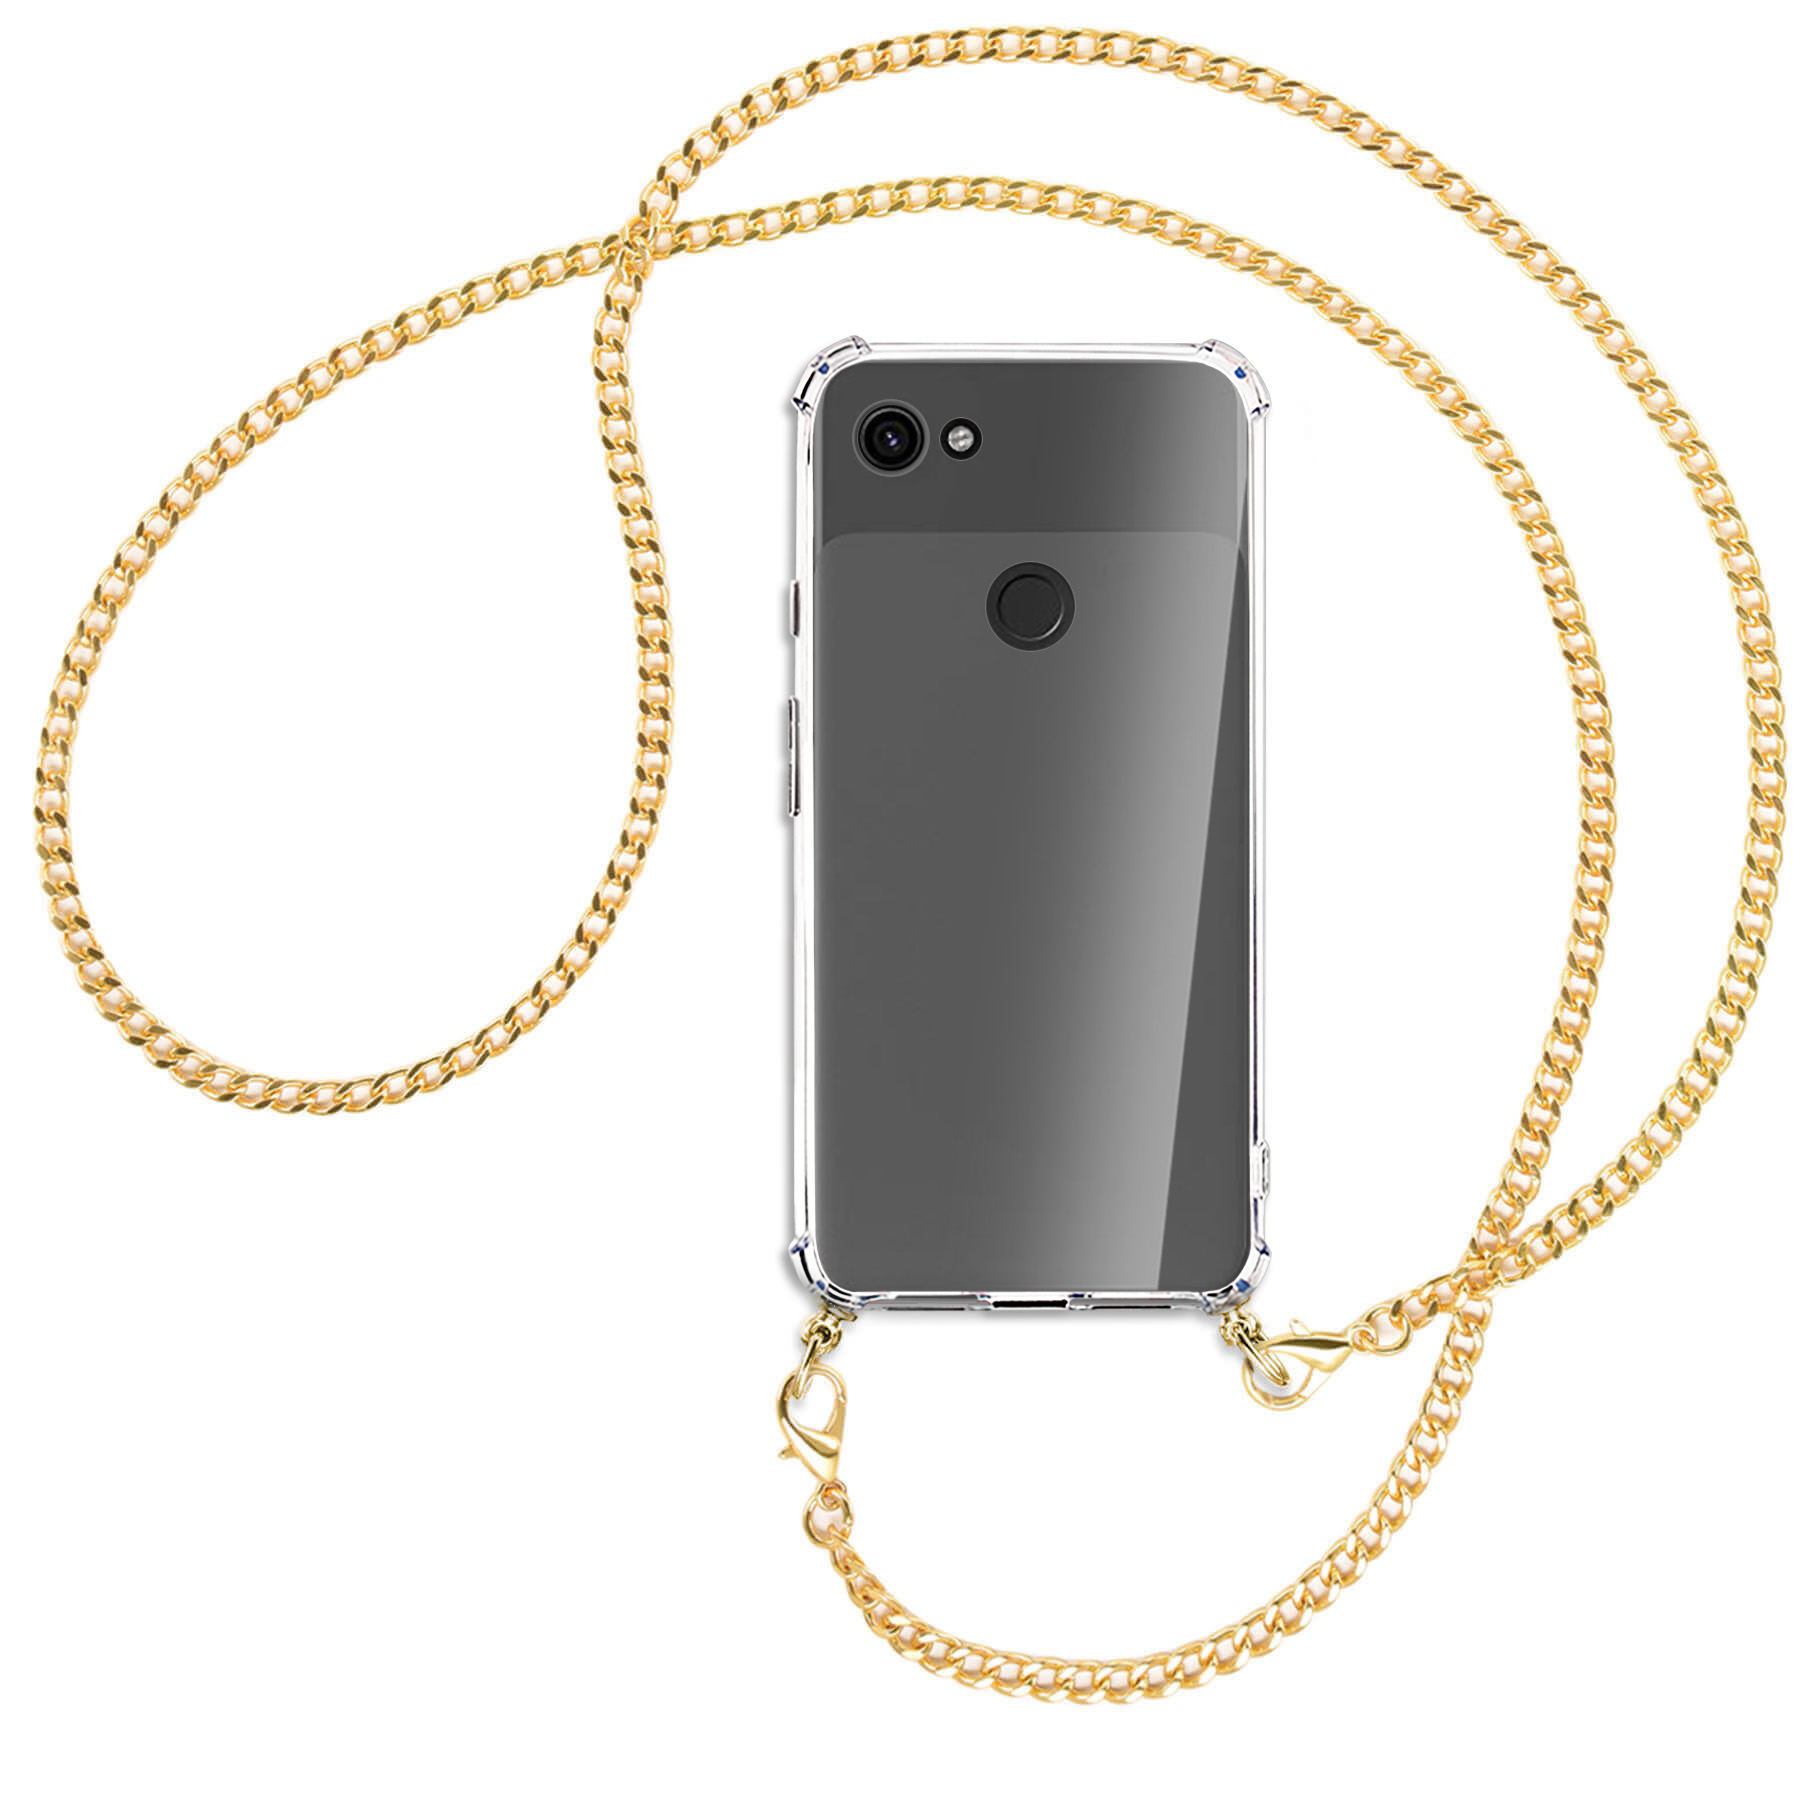 MTB MORE Kette Pixel Umhänge-Hülle mit Metallkette, Backcover, Google, ENERGY (goldfarben) 3a